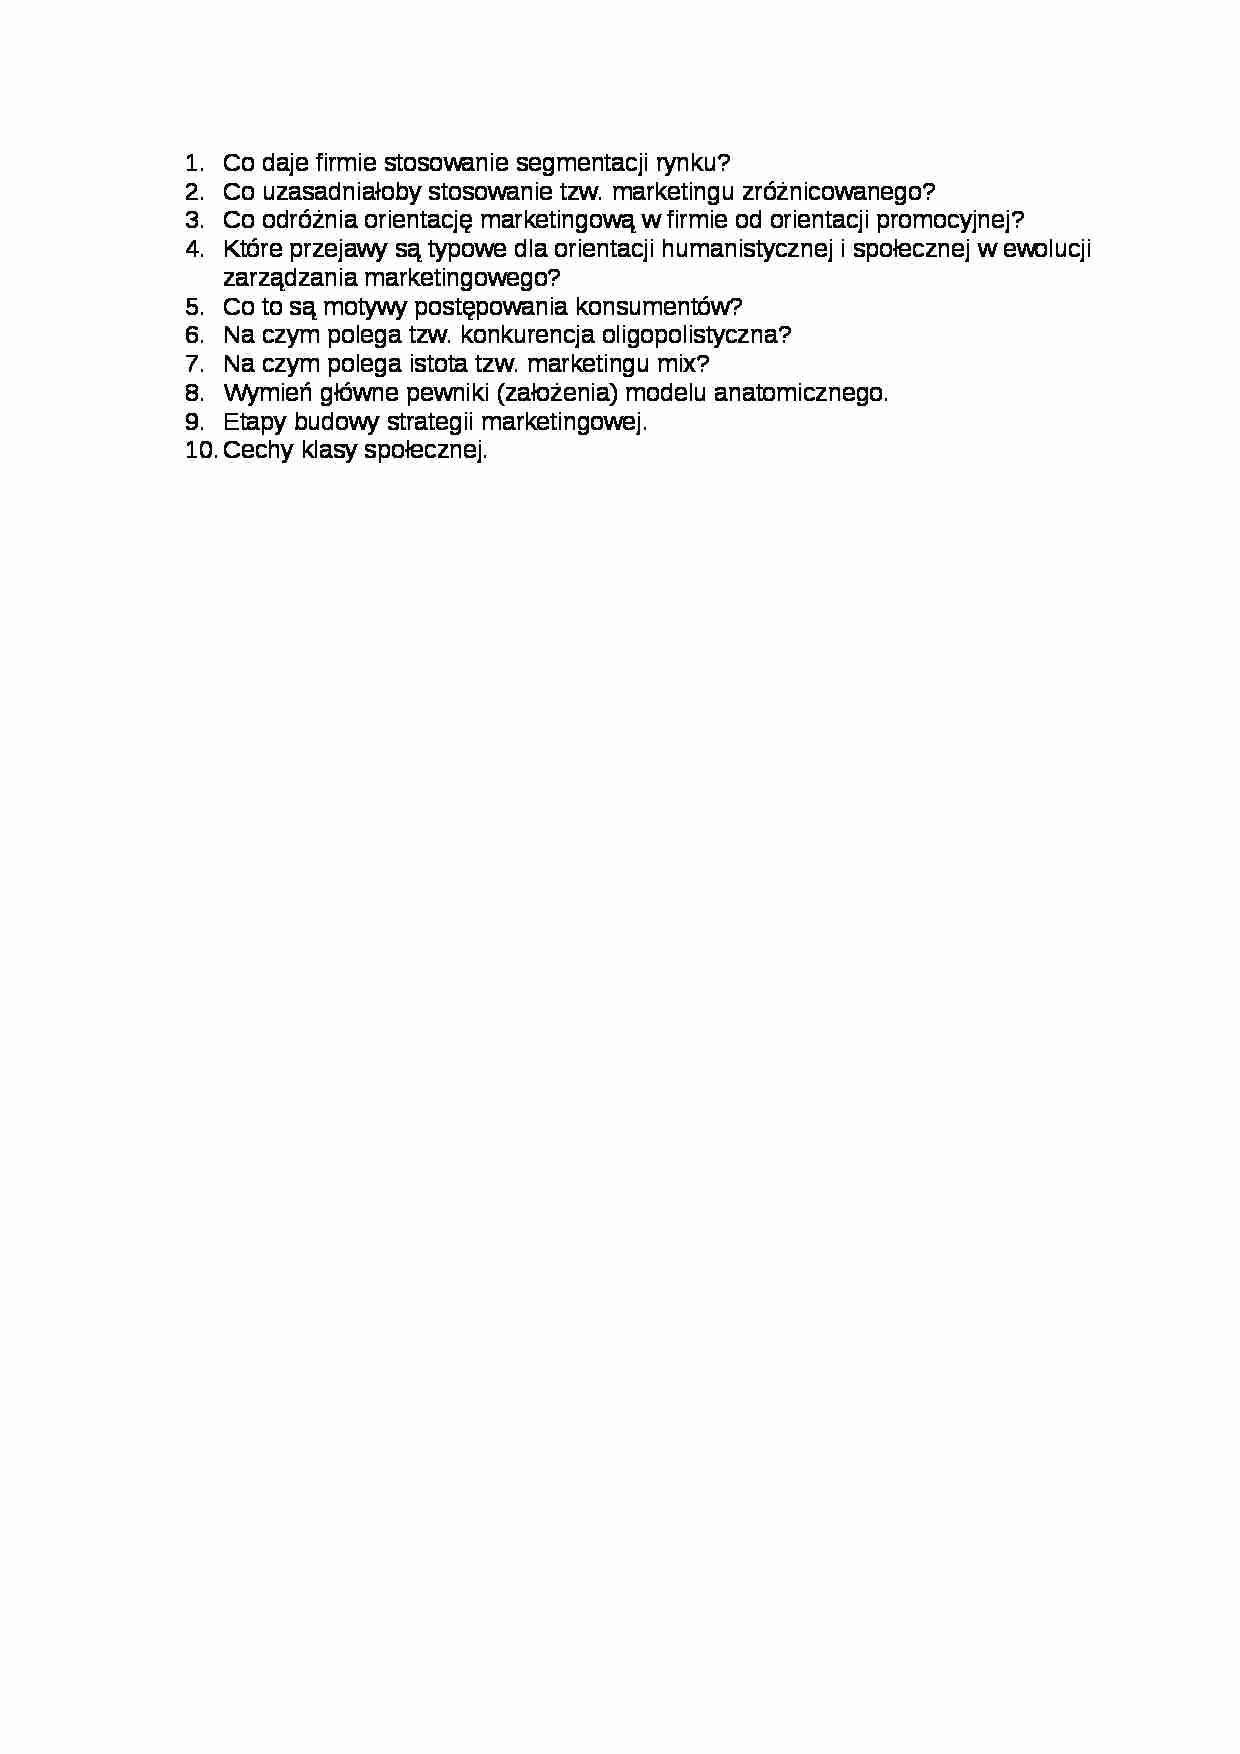 Egzamin-pytania - Segmentacja rynku - strona 1